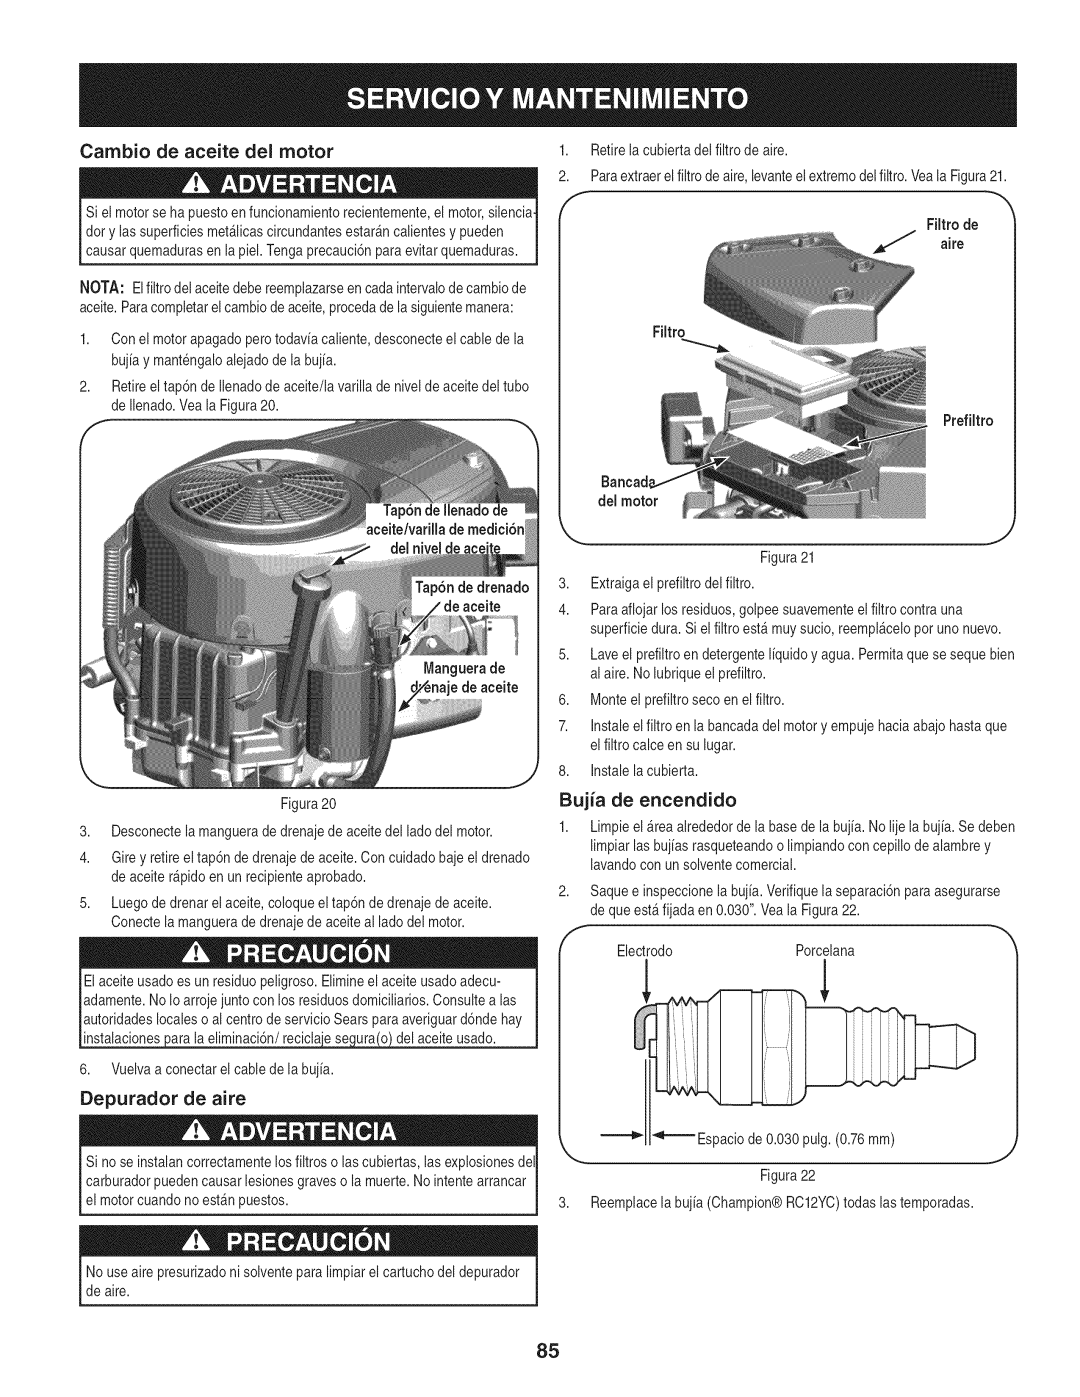 Craftsman 247.28672, PYT 9000 manual Cambio de aceite del motor, Bujia de encendido, Depurador de aire 